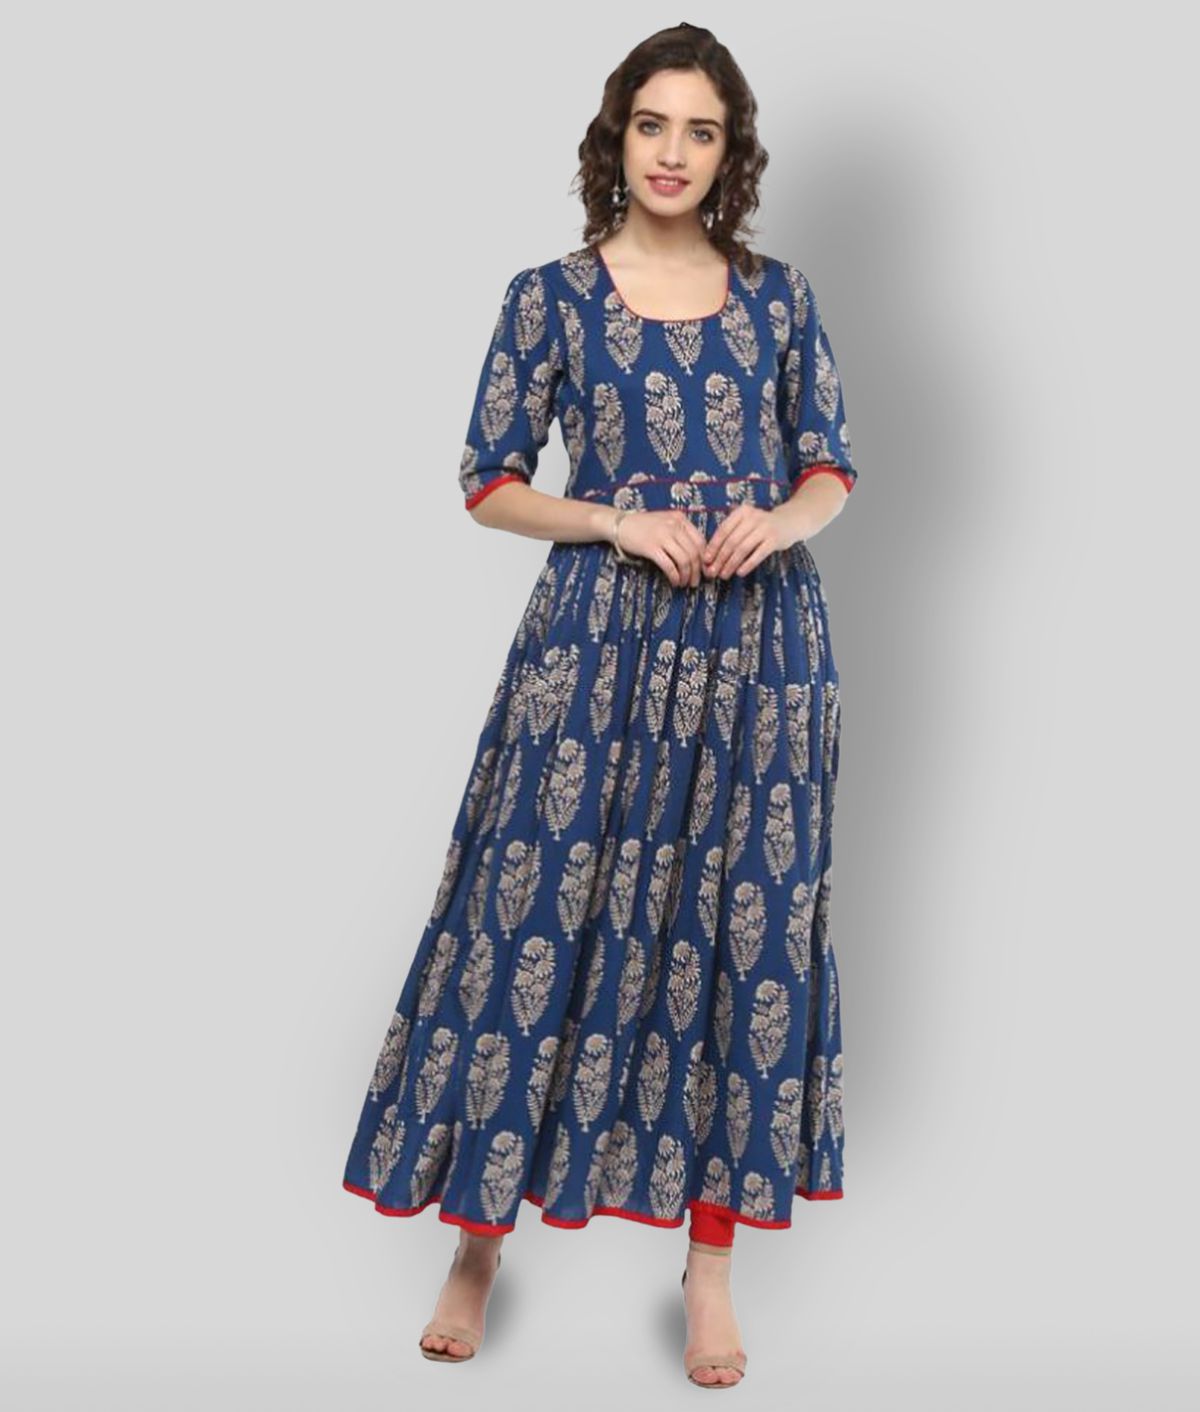     			Divena - Blue Cotton Women's Regular Dress ( Pack of 1 )